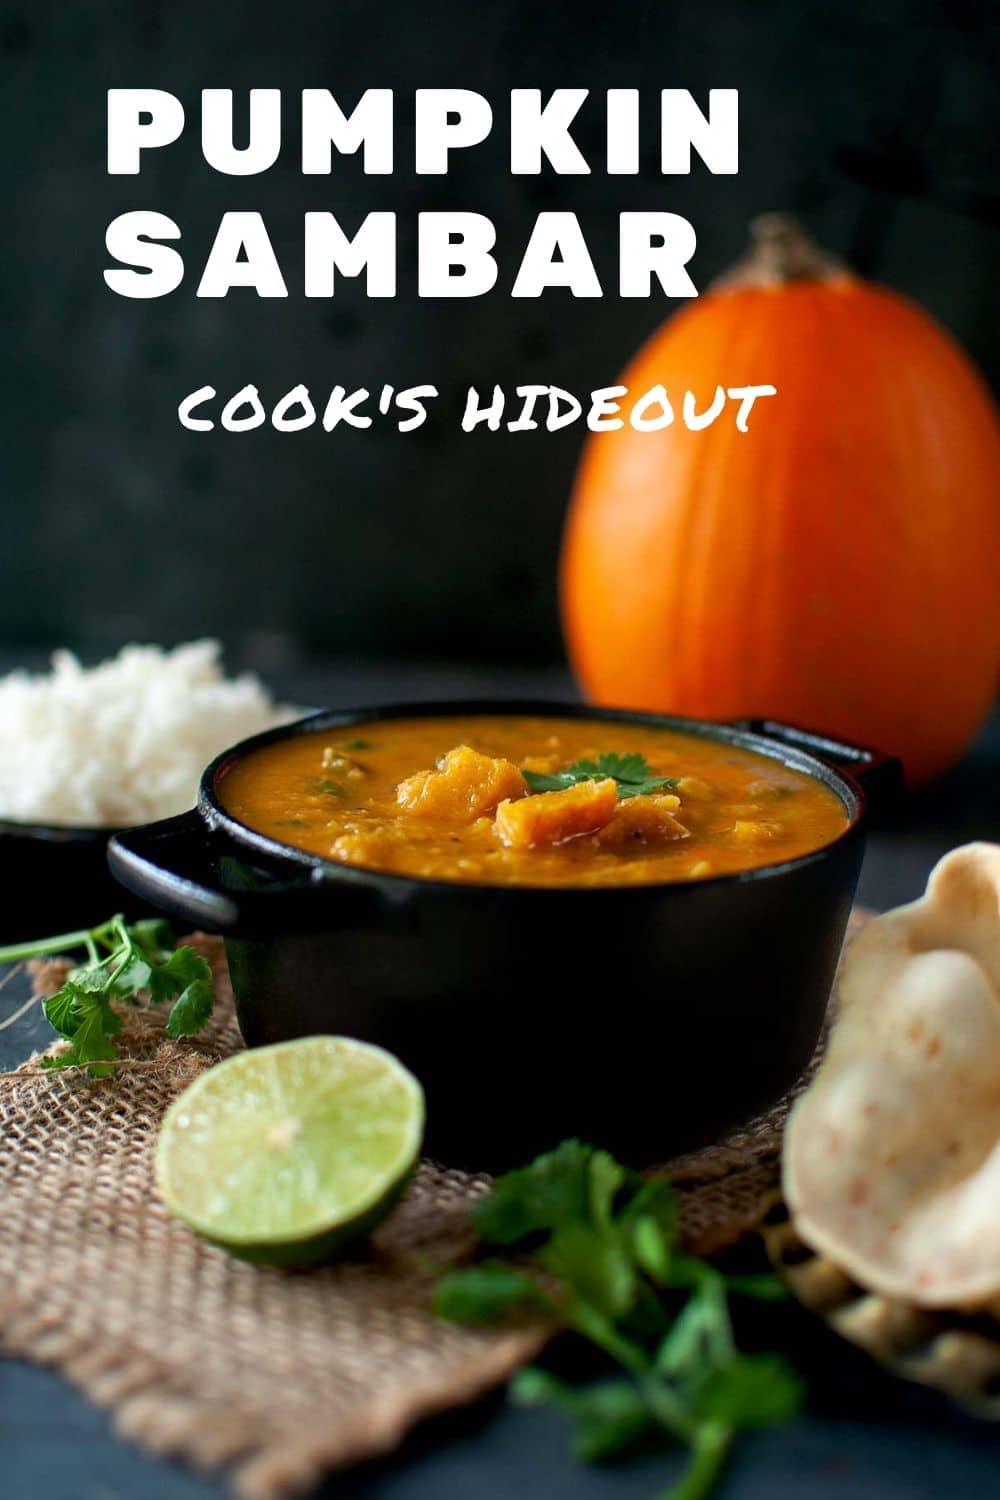 Black pan with roasted pumpkin sambar